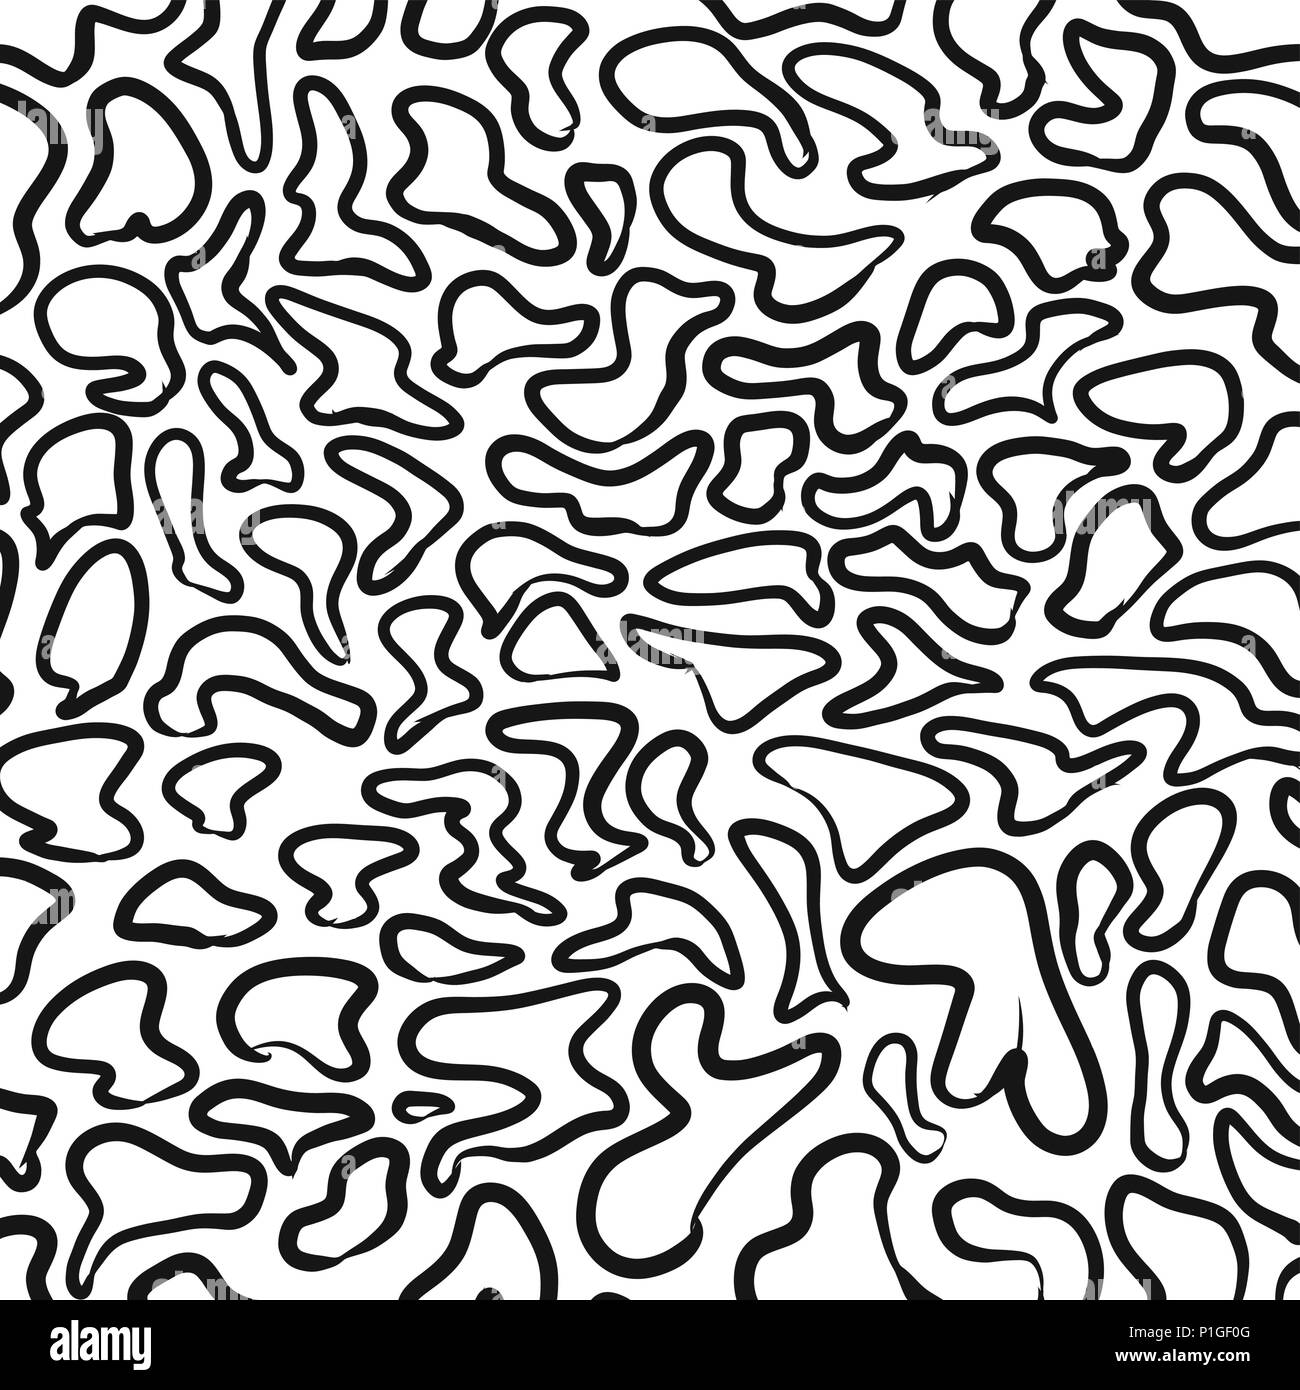 Abstract leopard wallpaper pattern, vector illustration Stock Vector